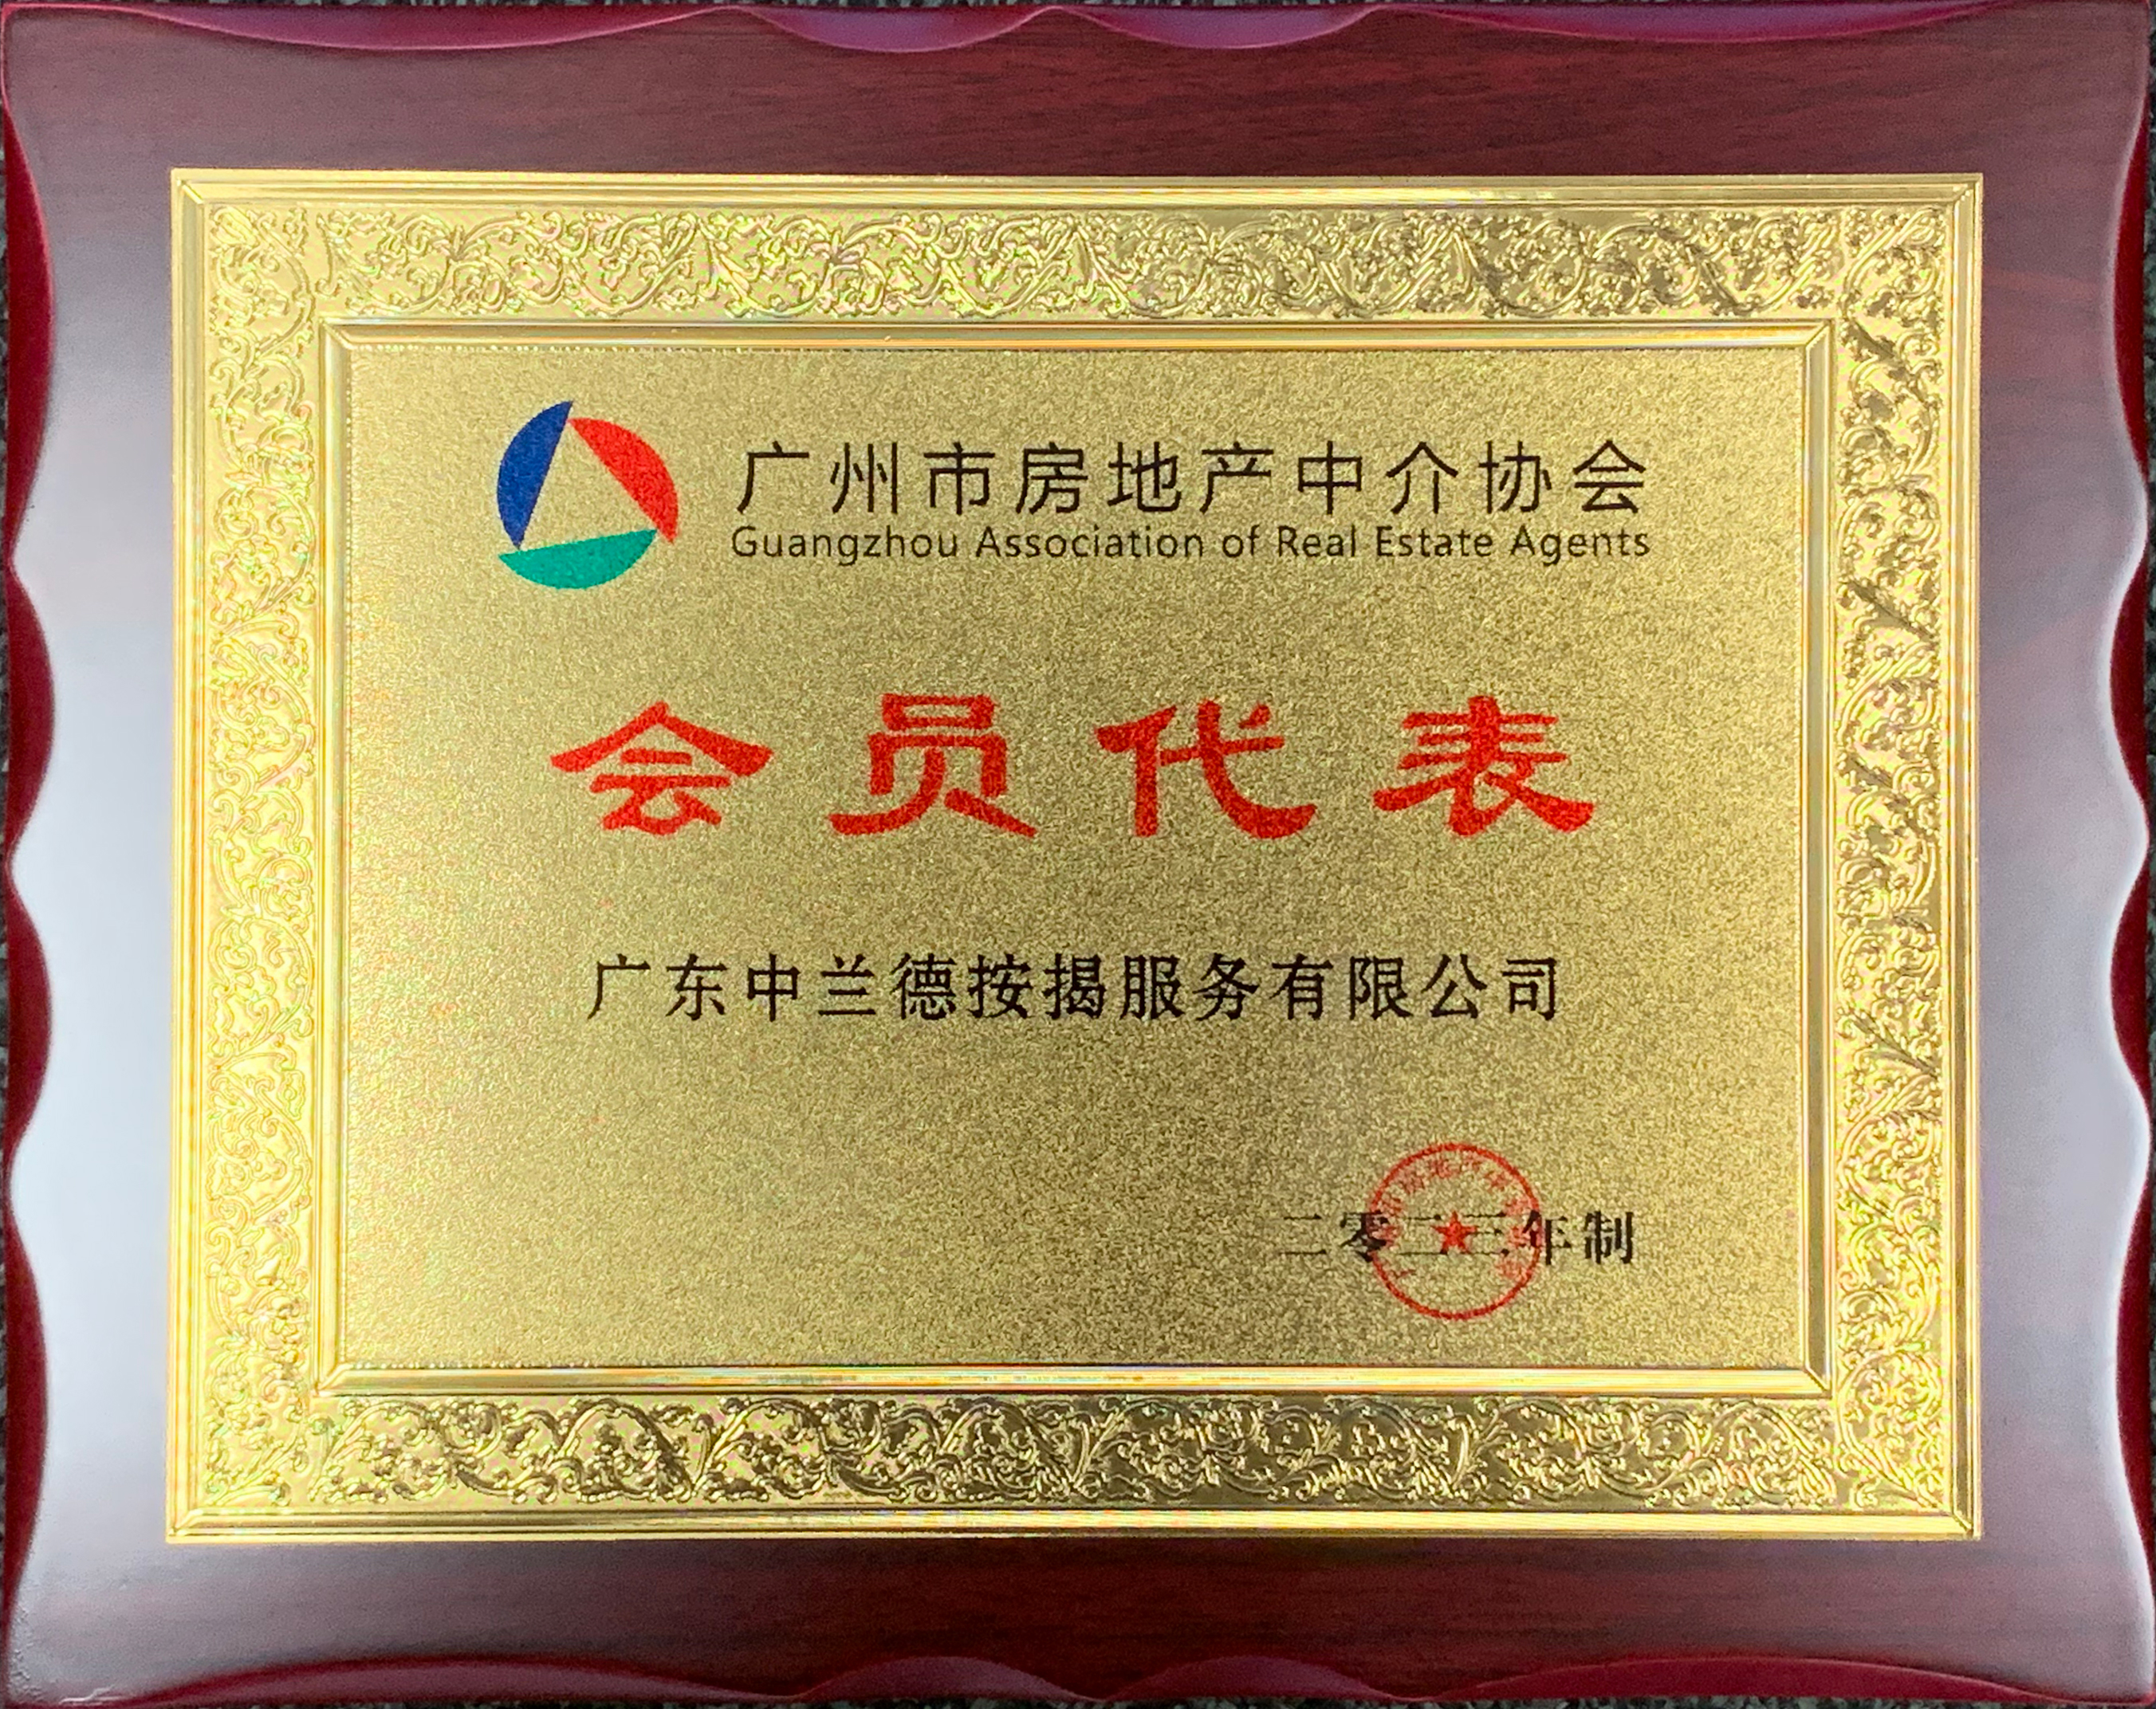 融通中兰德按揭当选为广州市房地产中介协会会员代表单位